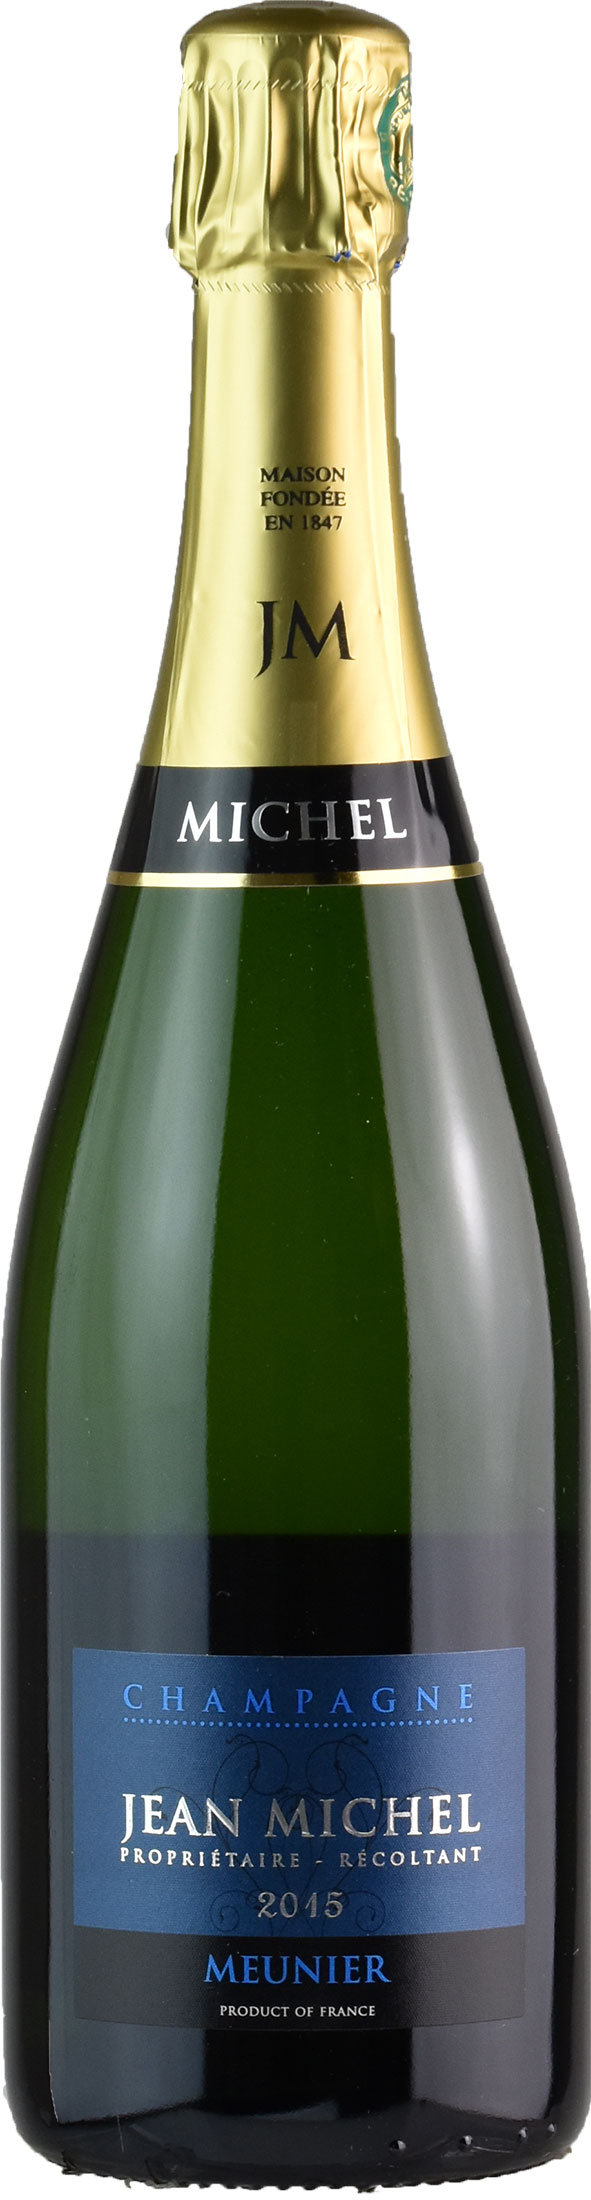 Jean Michel Champagne Blanc de Noirs Meunier Brut 2015